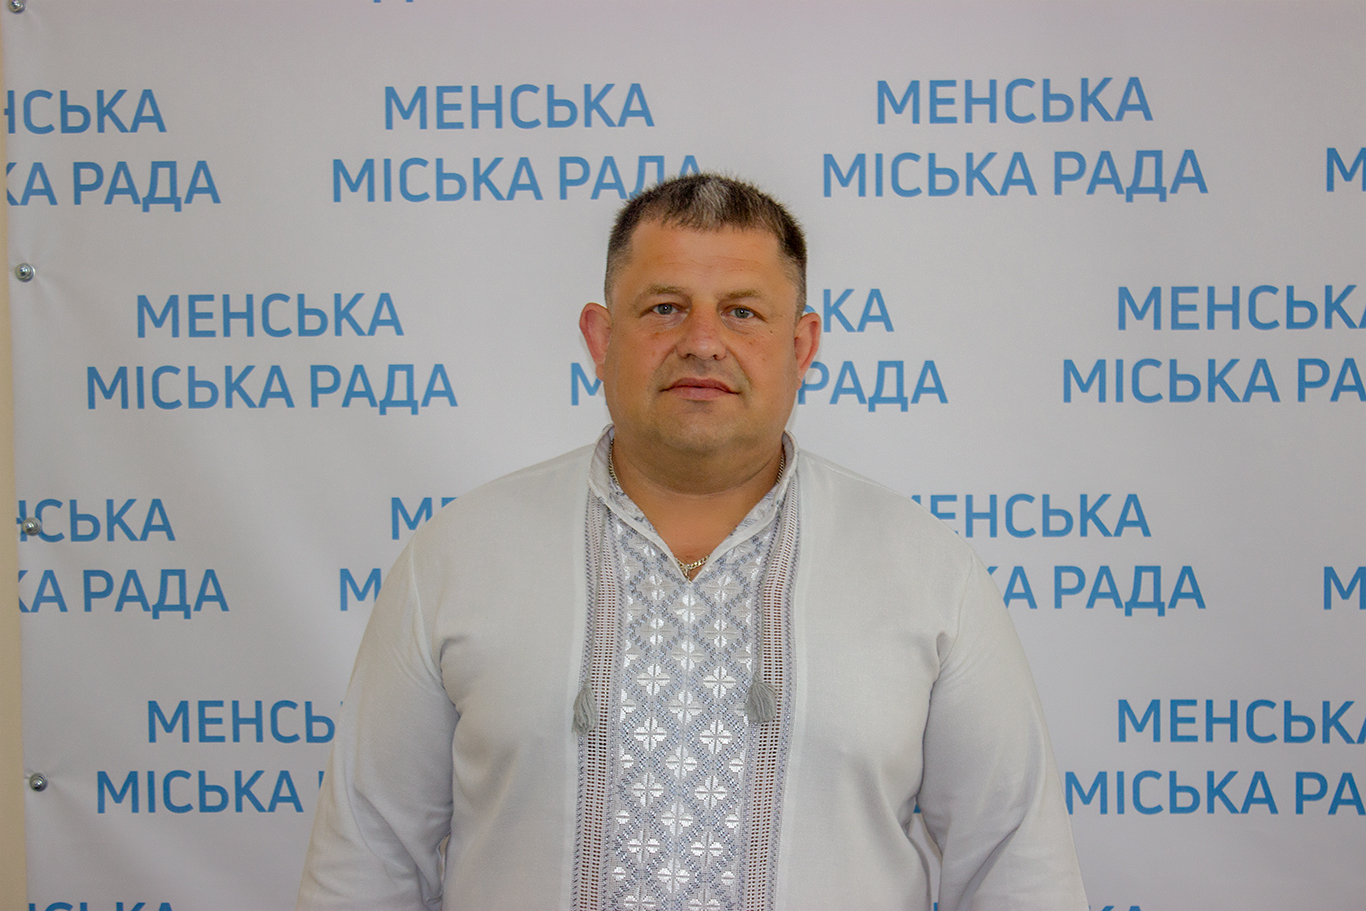 Hennadiy Prymakov, Mena community head